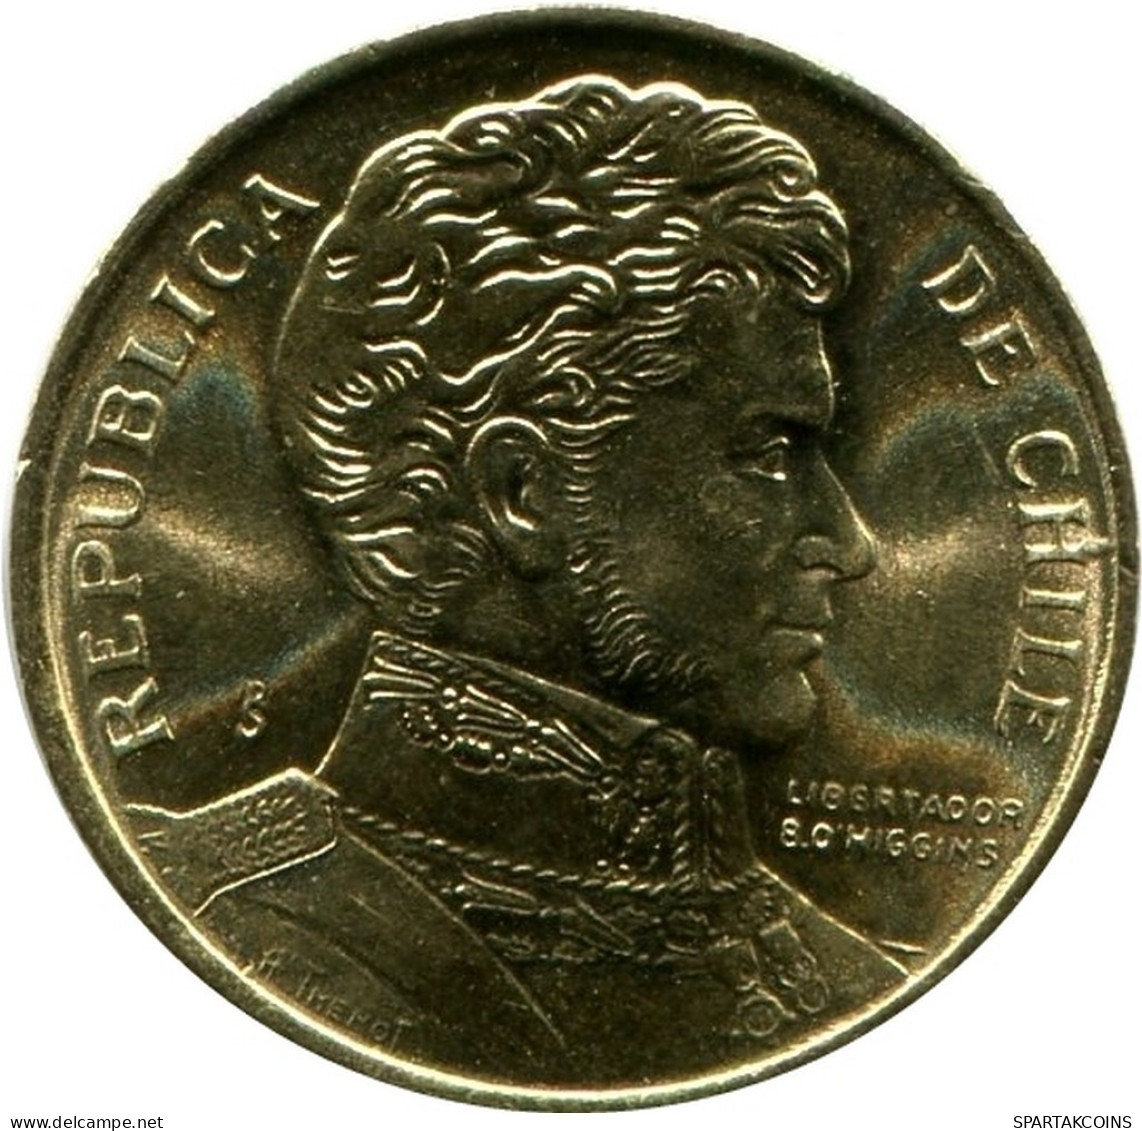 1 PESO 1990 CHILE UNC Coin #M10122.U.A - Chili